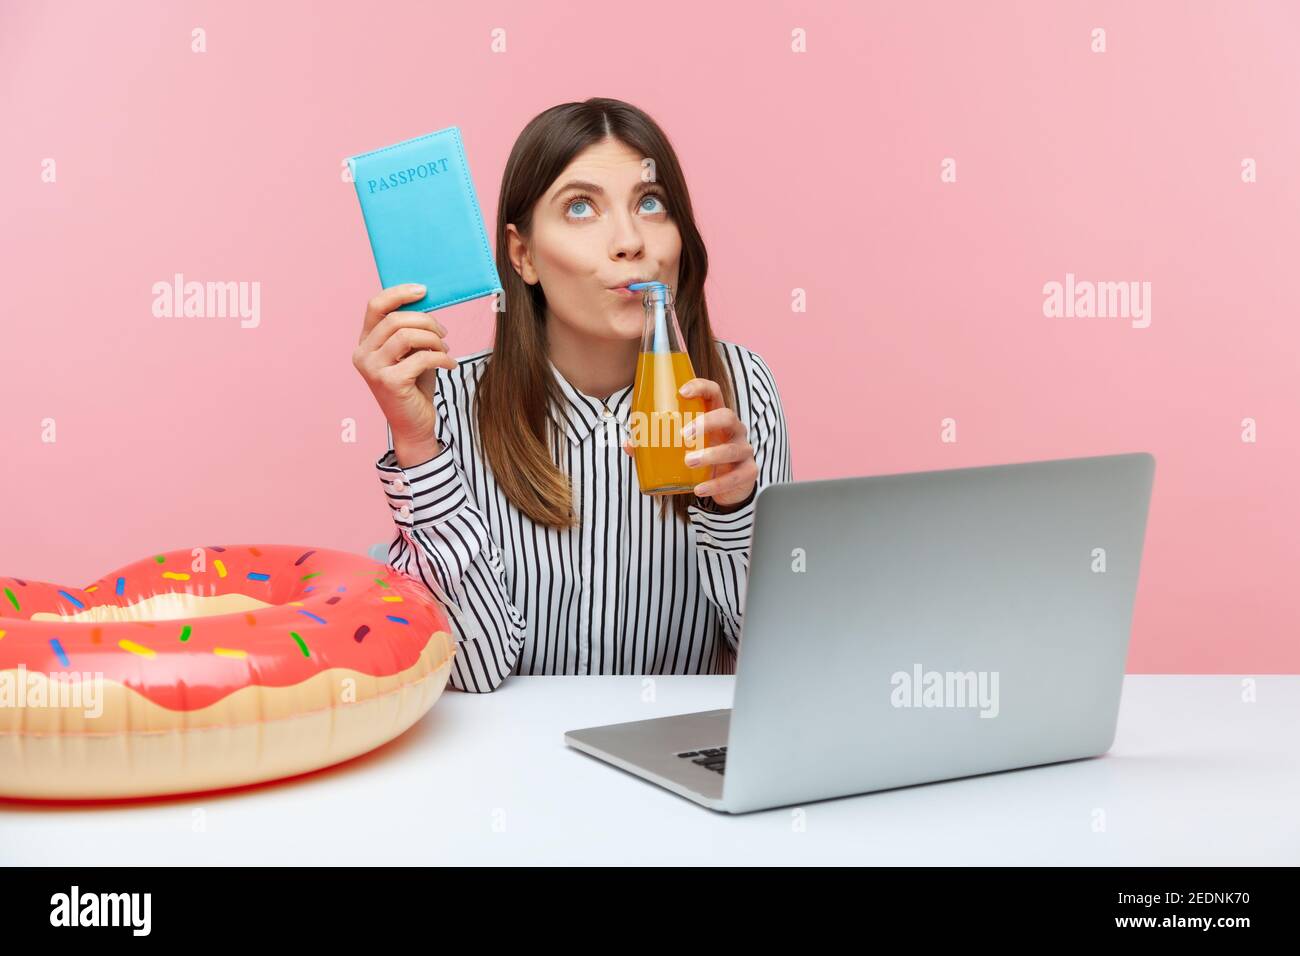 Sognante donna pensabile bere limonata tenendo in mano il passaporto, immaginando vacanze all'estero seduto sul posto di lavoro con laptop e rin di gomma Foto Stock